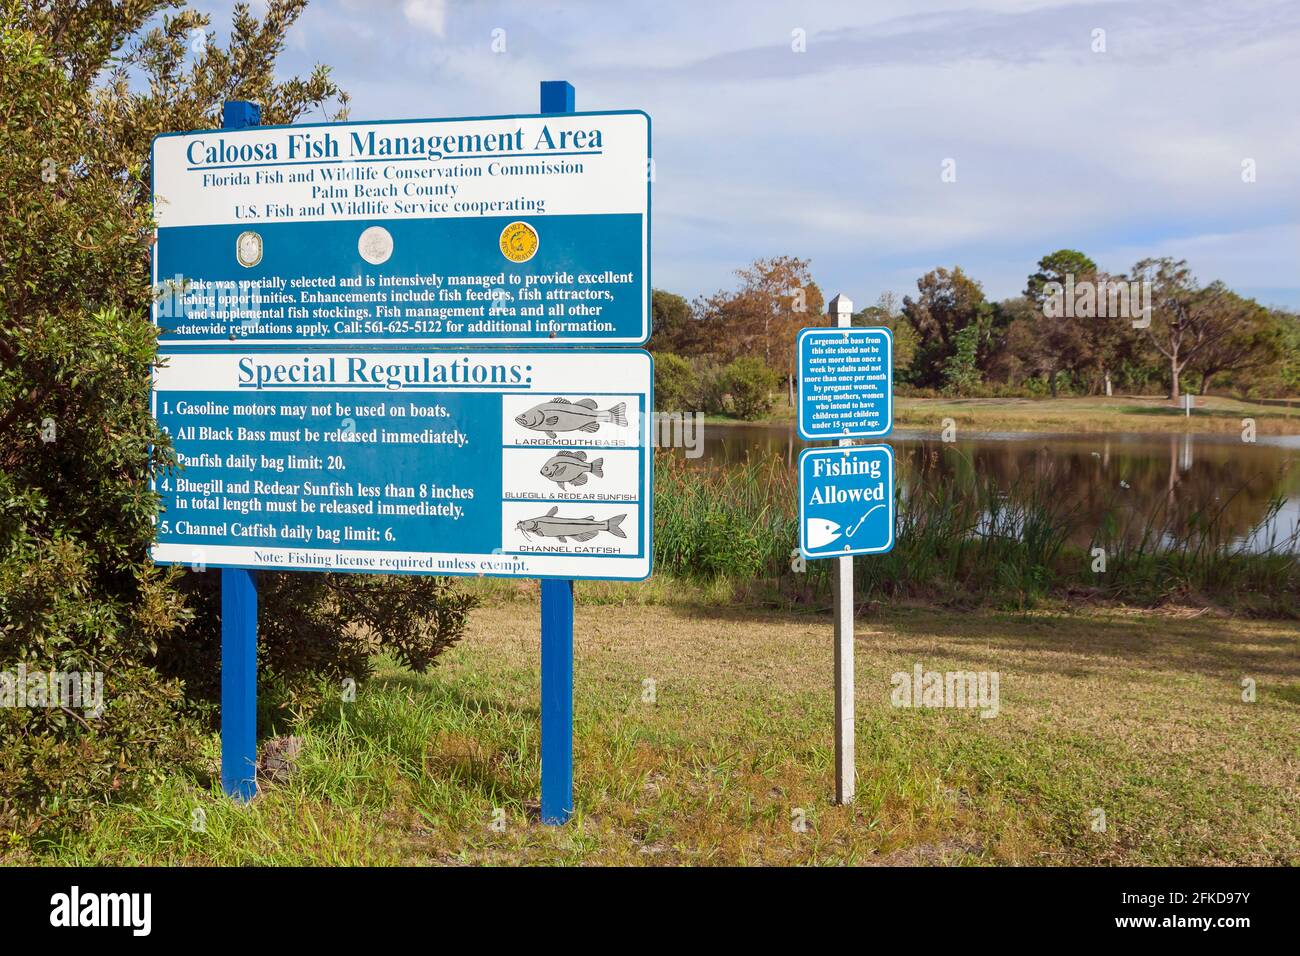 Panneau dans le parc Caloosa du comté de Palm Beach en Floride montrant les règles et règlements pour la gestion du poisson. Banque D'Images